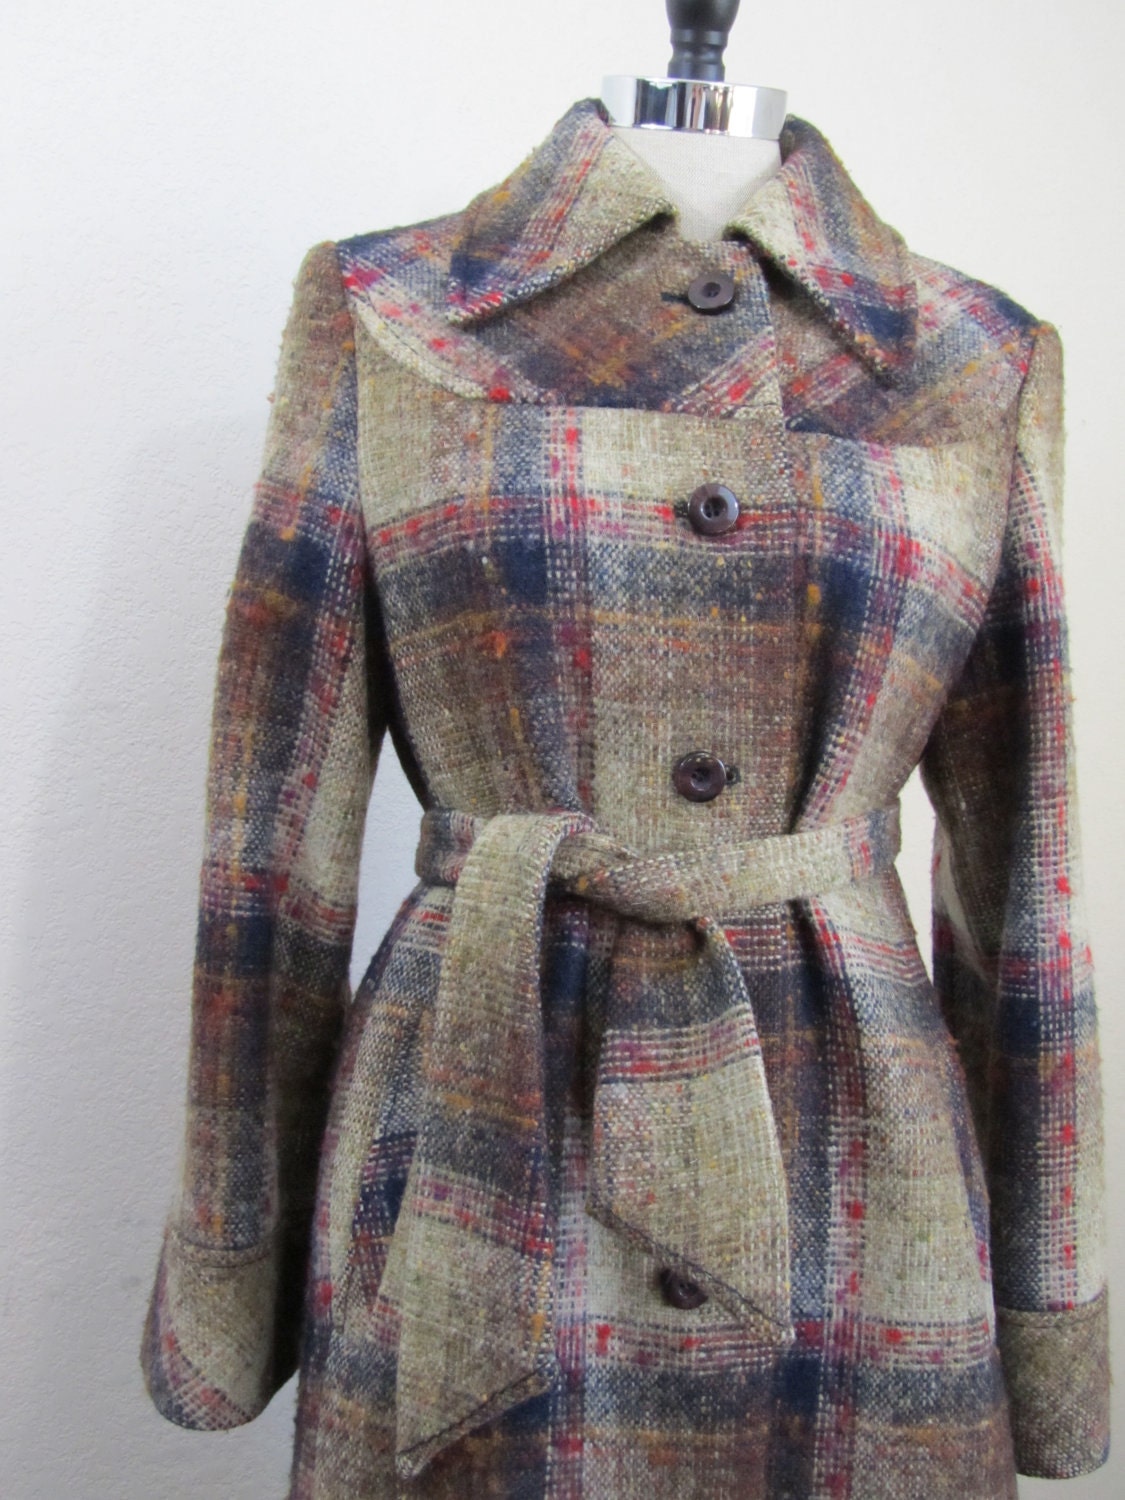 Vintage 1970s Coat in Irish Tweed Wool by 4birdsvintage on Etsy